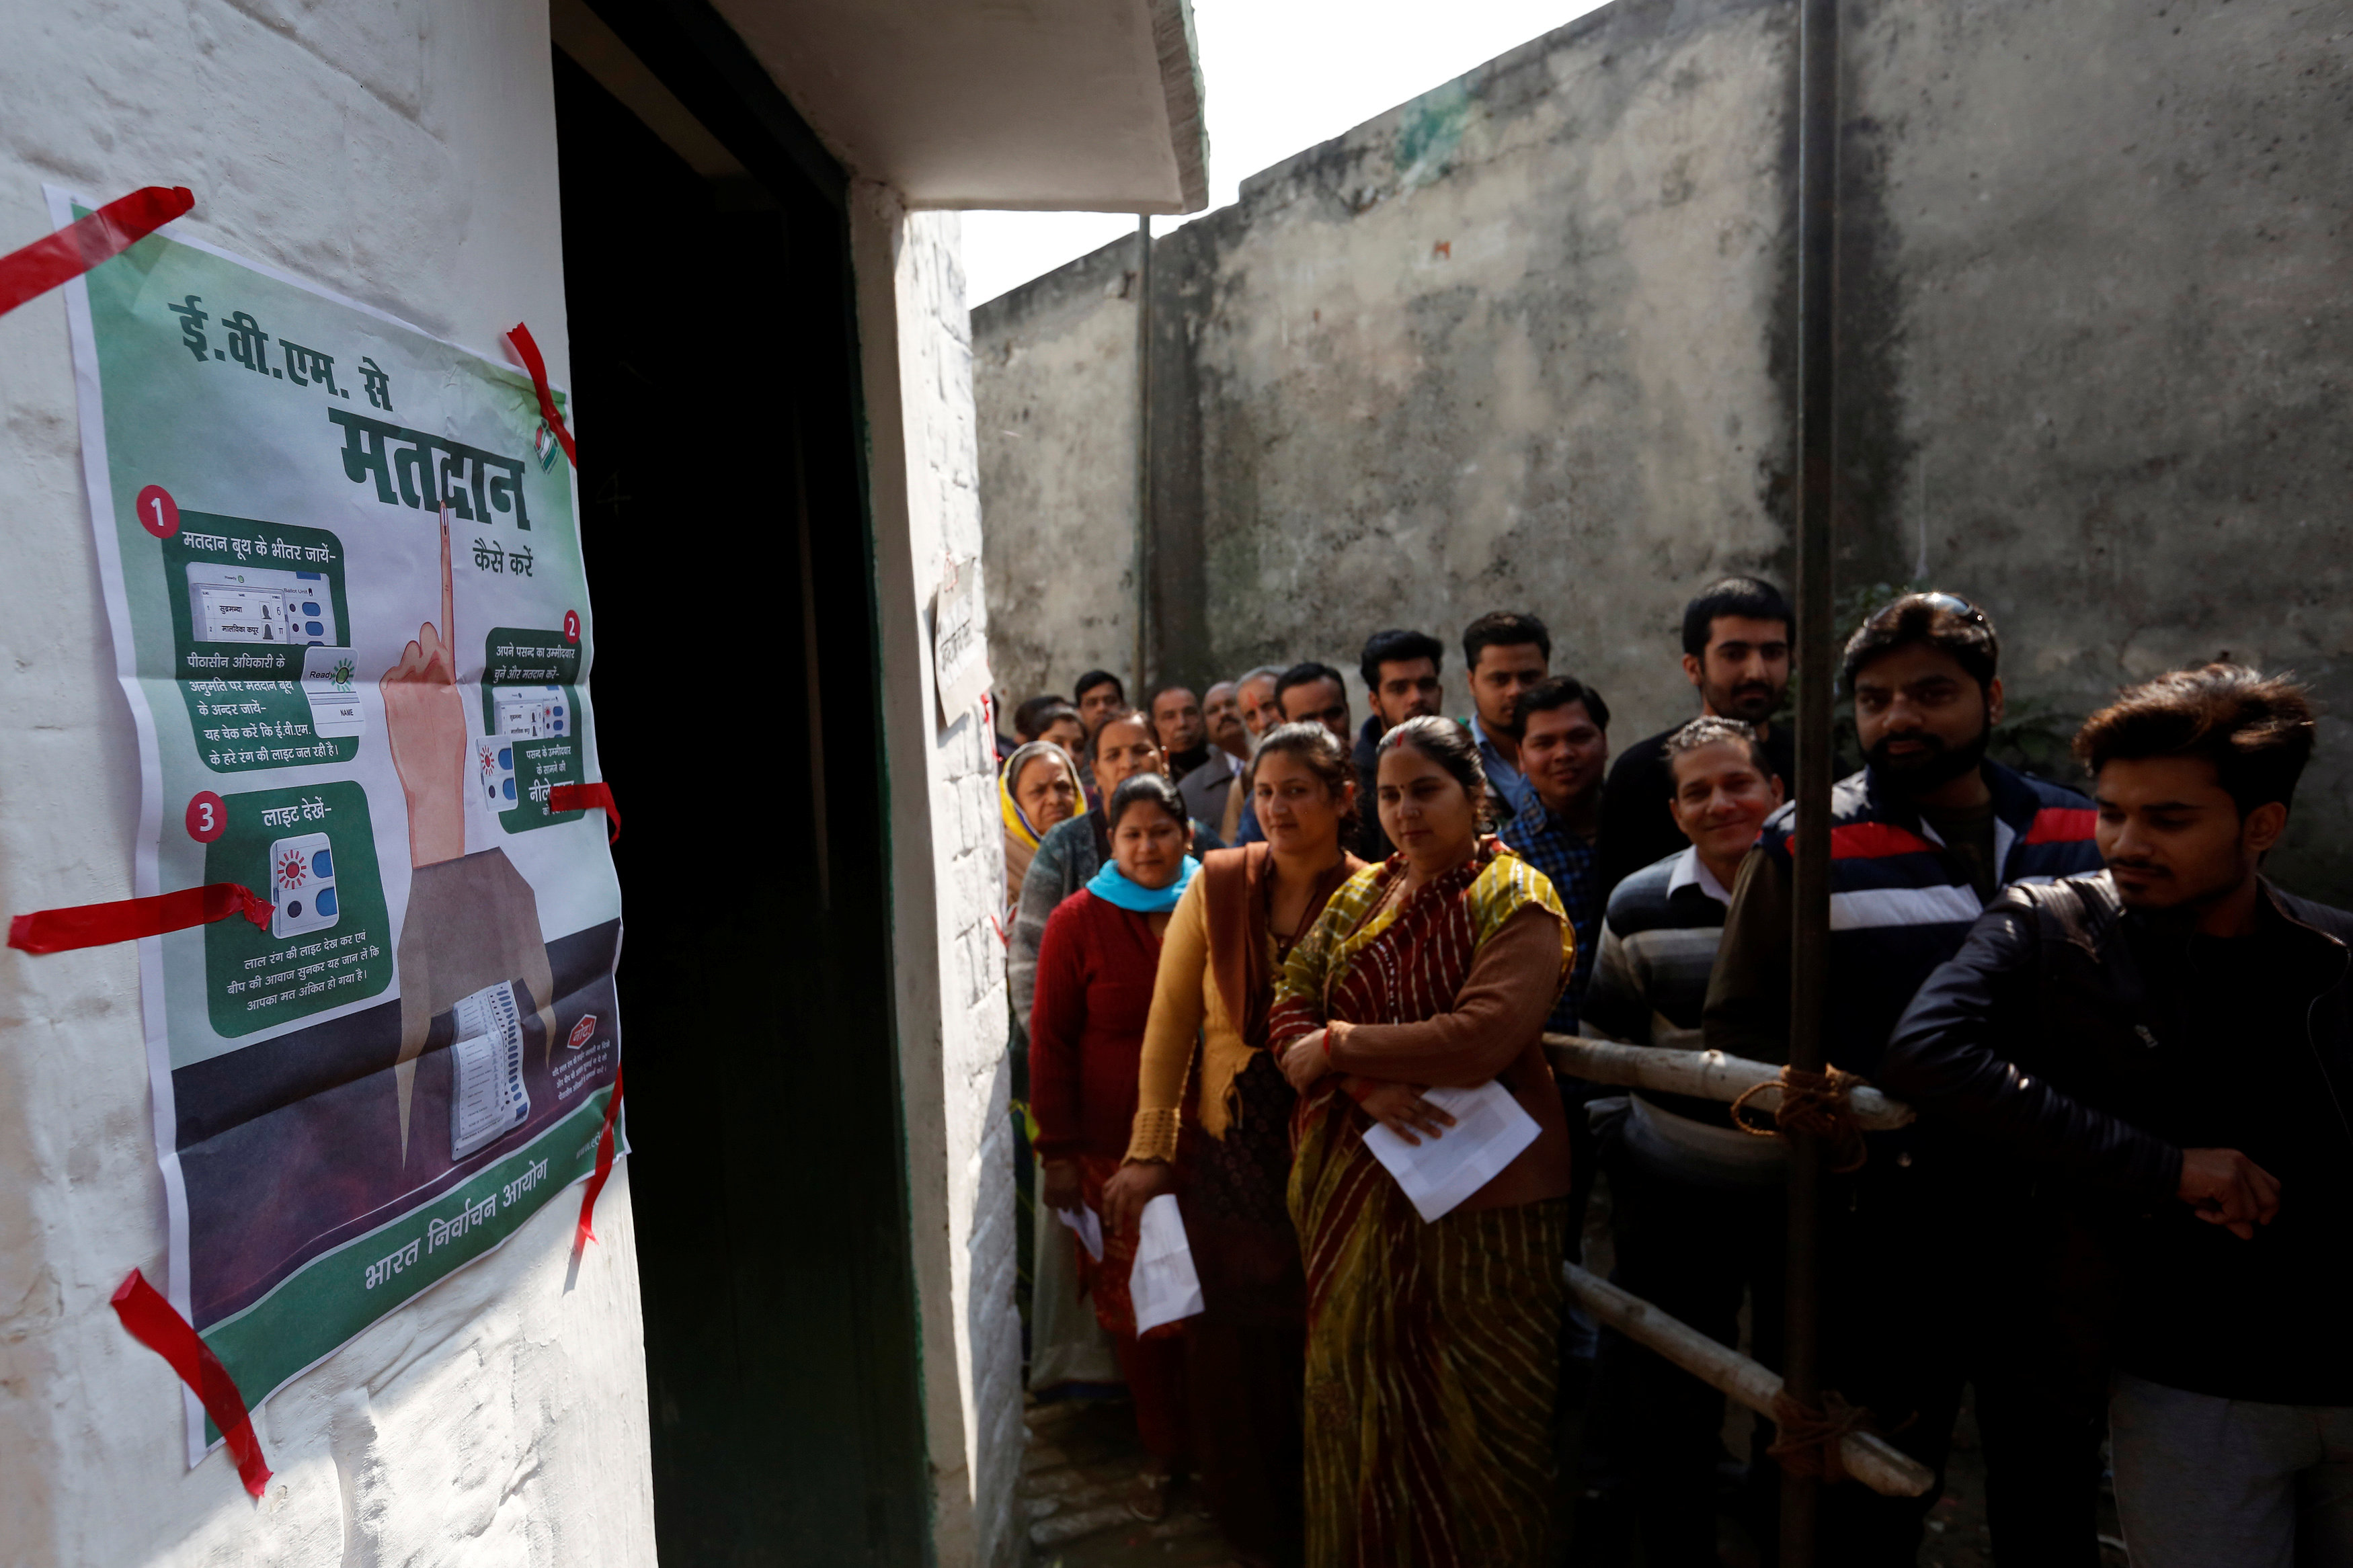 ناخبون يقفون أمام لوحة الإرشادات الخاصة بانتخابات حكومة محلية فى الهند